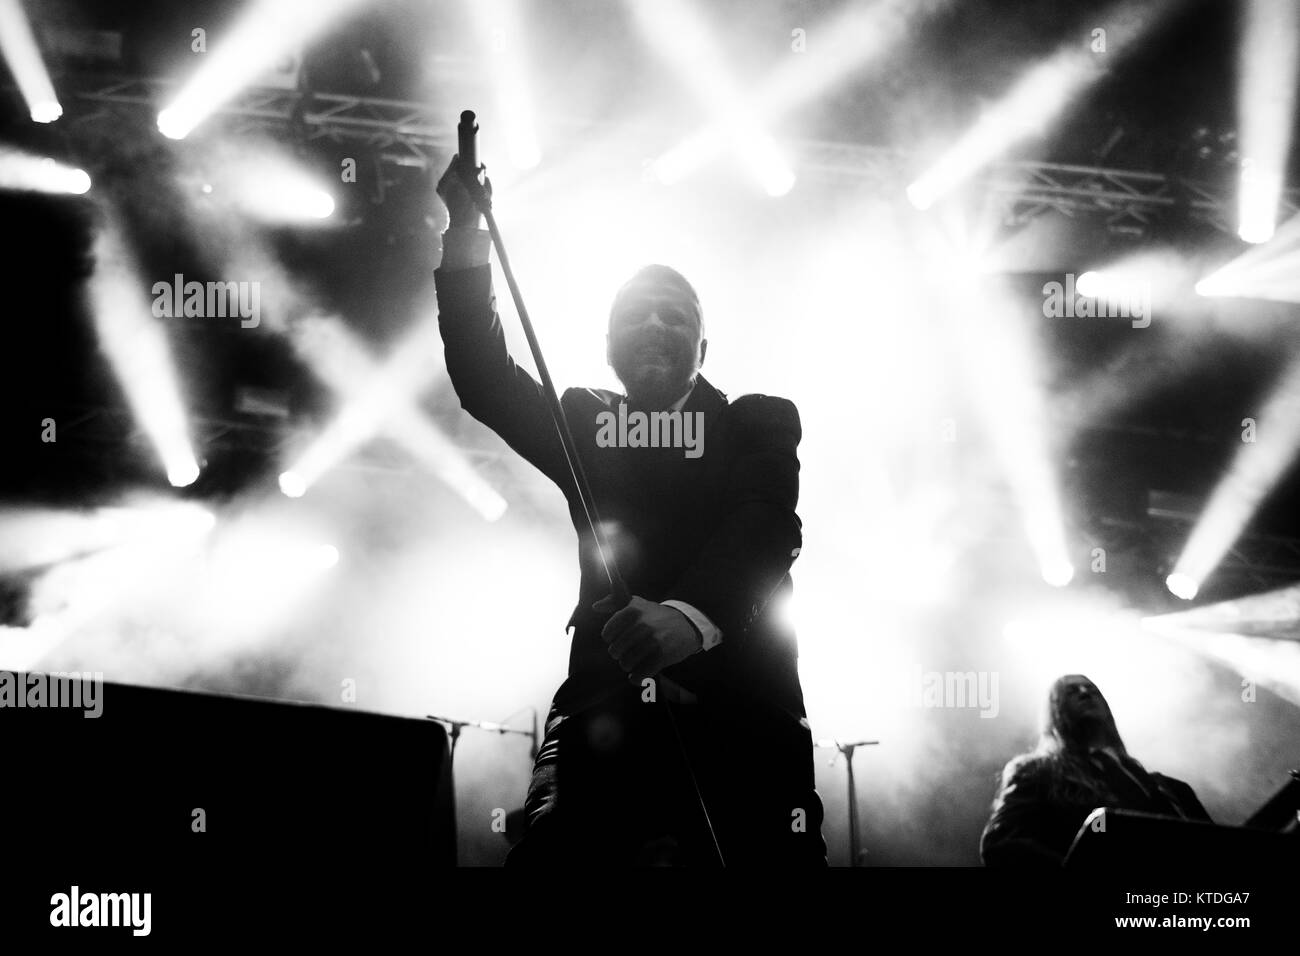 Le groupe de doom metal féroïen (Hamferð Hamferd) effectue un concert live au festival de musique des îles Féroé G ! Festival 2014. Ici le chanteur Jón Aldará est représenté sur scène. Îles Féroé, 18.07.2014. Banque D'Images